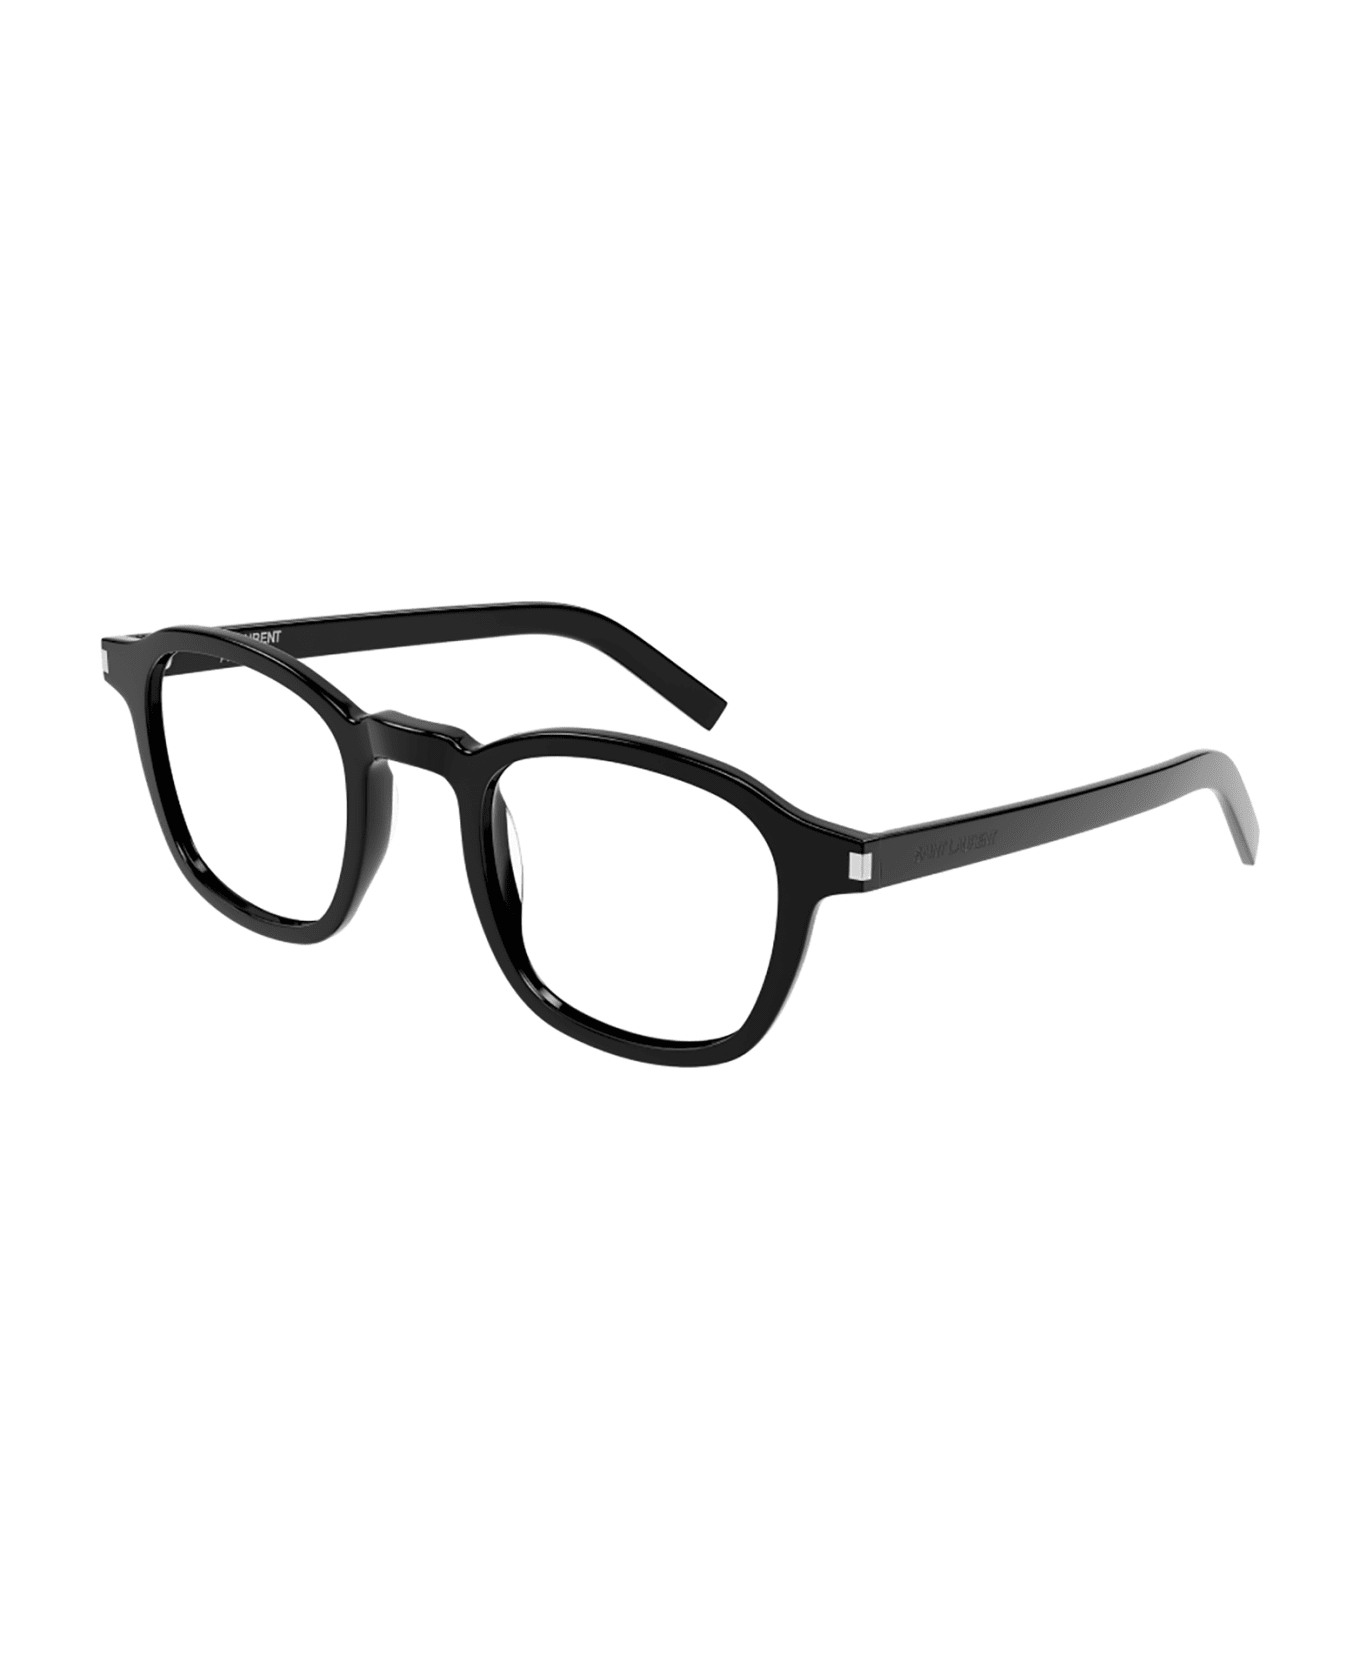 Saint Laurent Eyewear SL 549 SLIM OPT Eyewear - Black Black Transpare アイウェア